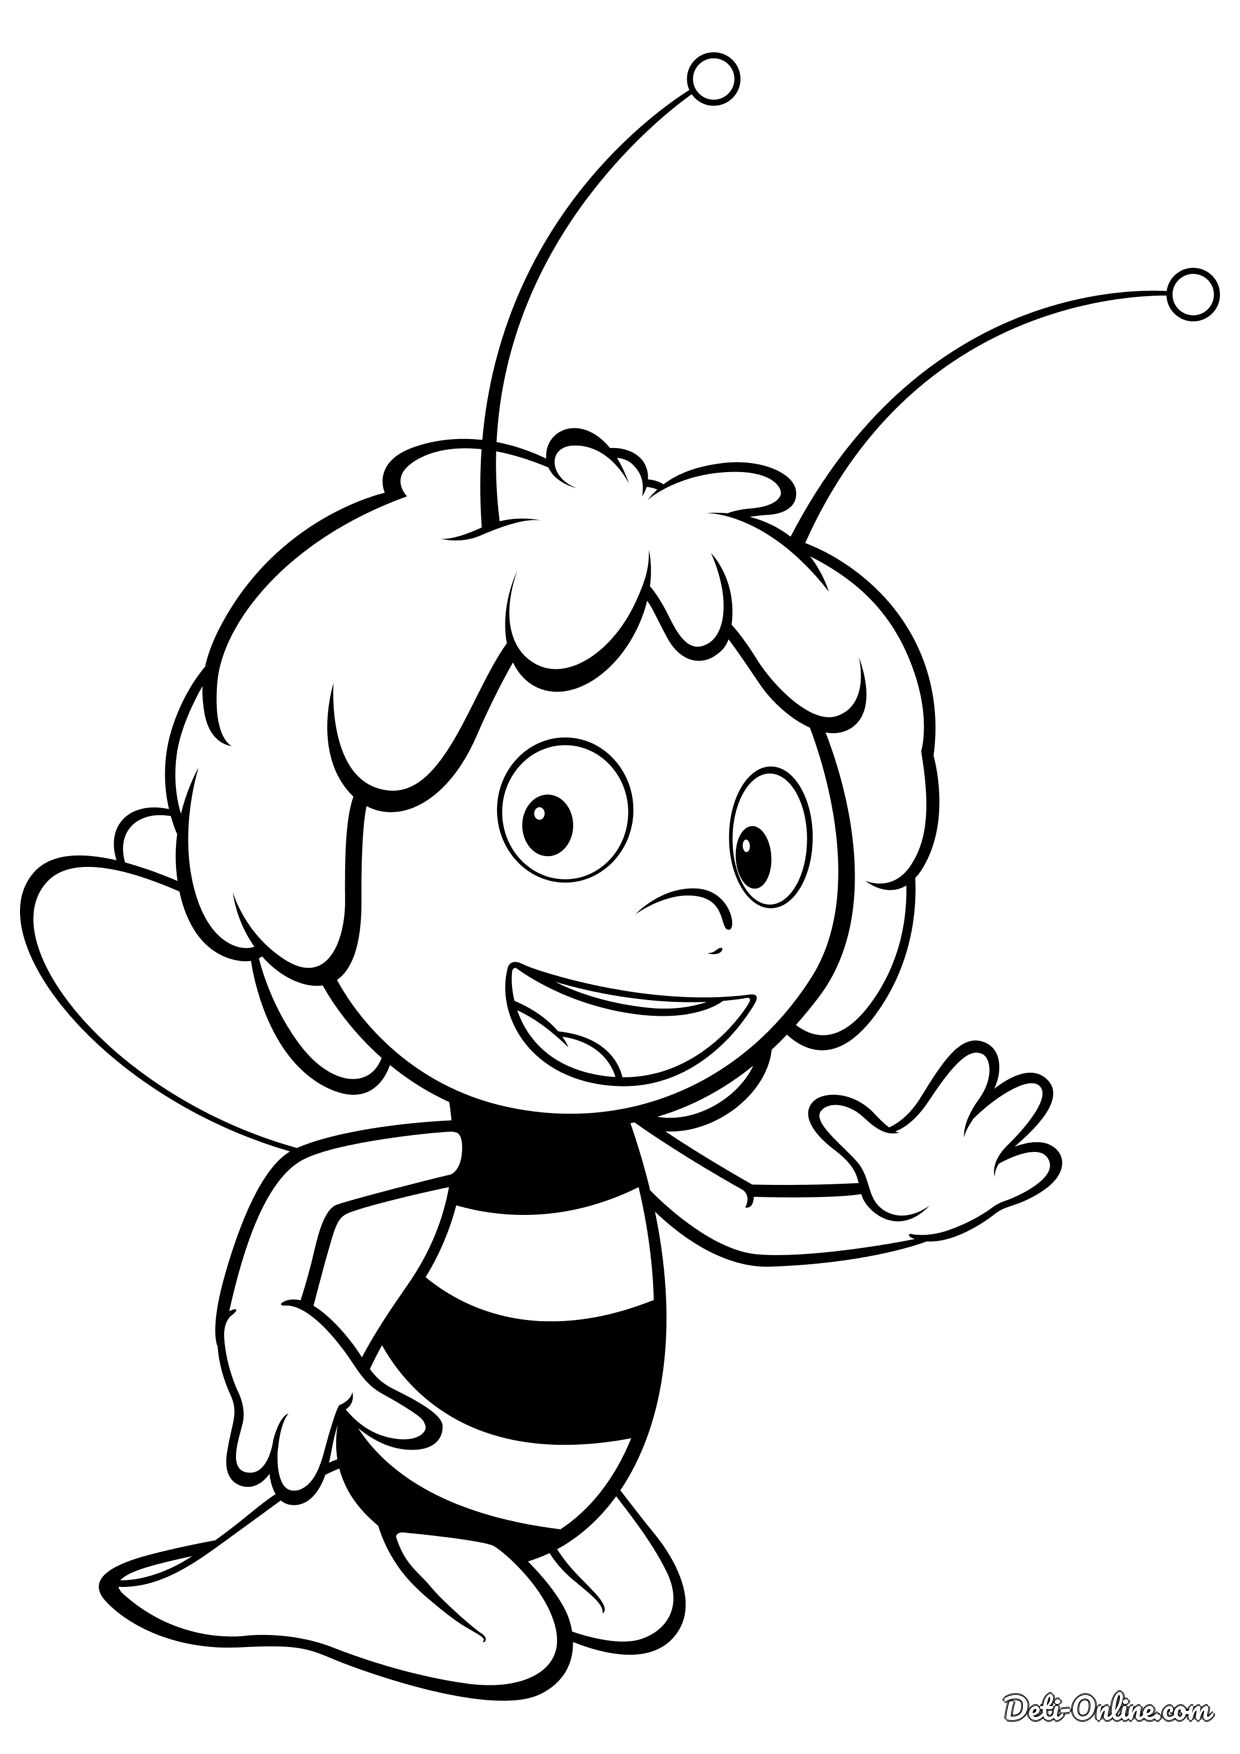 Пчела раскраска: векторные изображения и иллюстрации, которые можно скачать бесплатно | Freepik